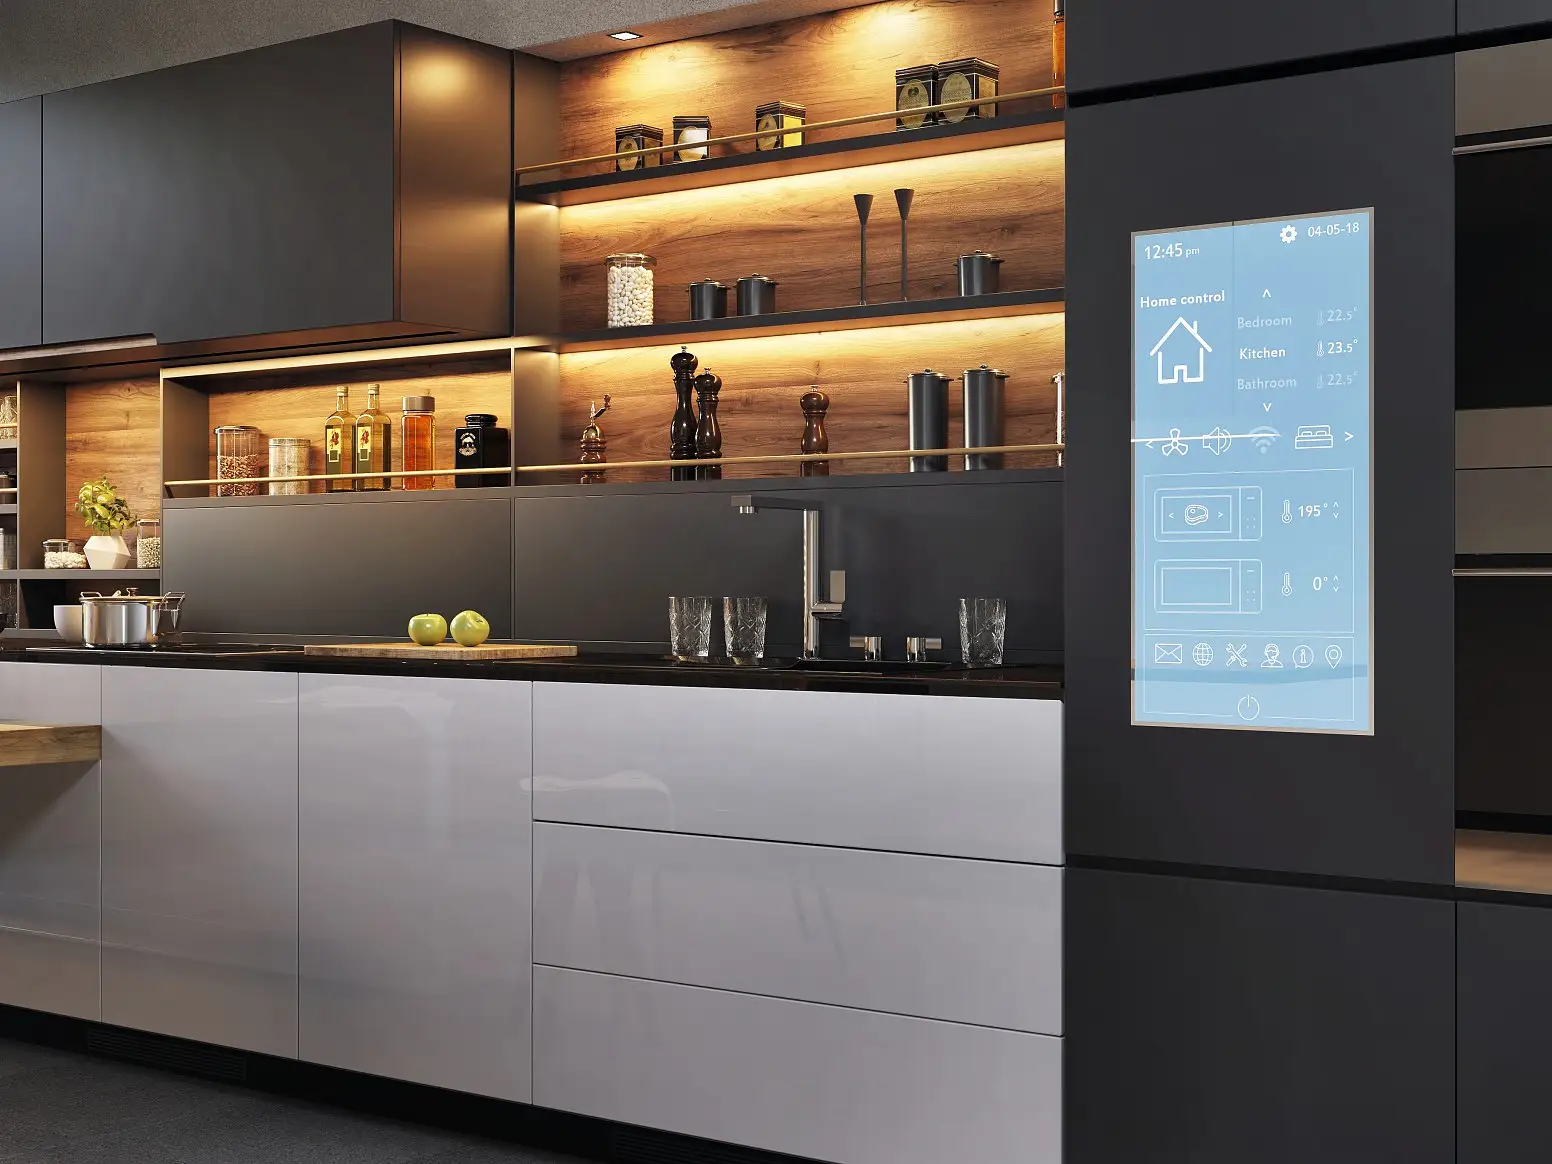 Panneau de commande pour maison intelligente dans une cuisine moderne